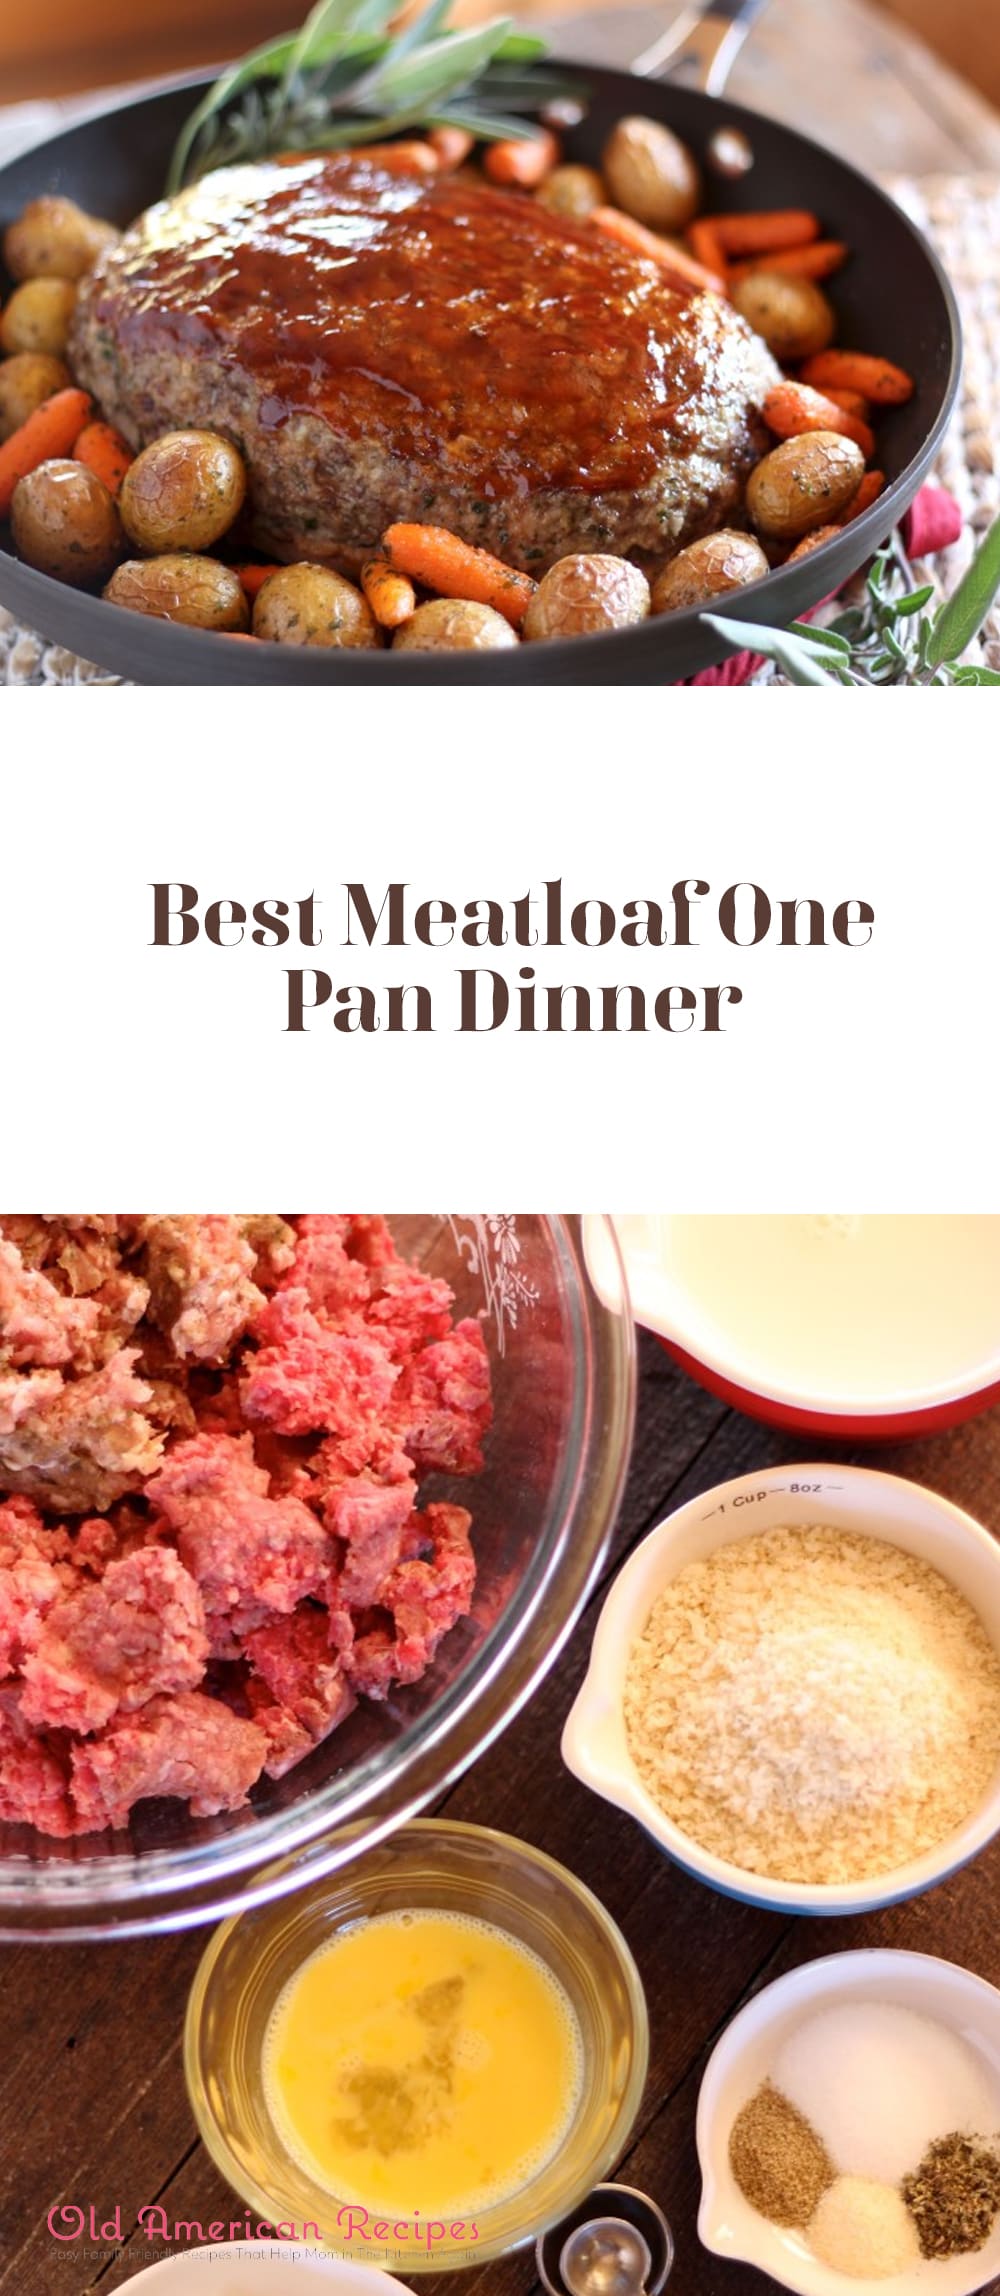 Best Meatloaf One Pan Dinner